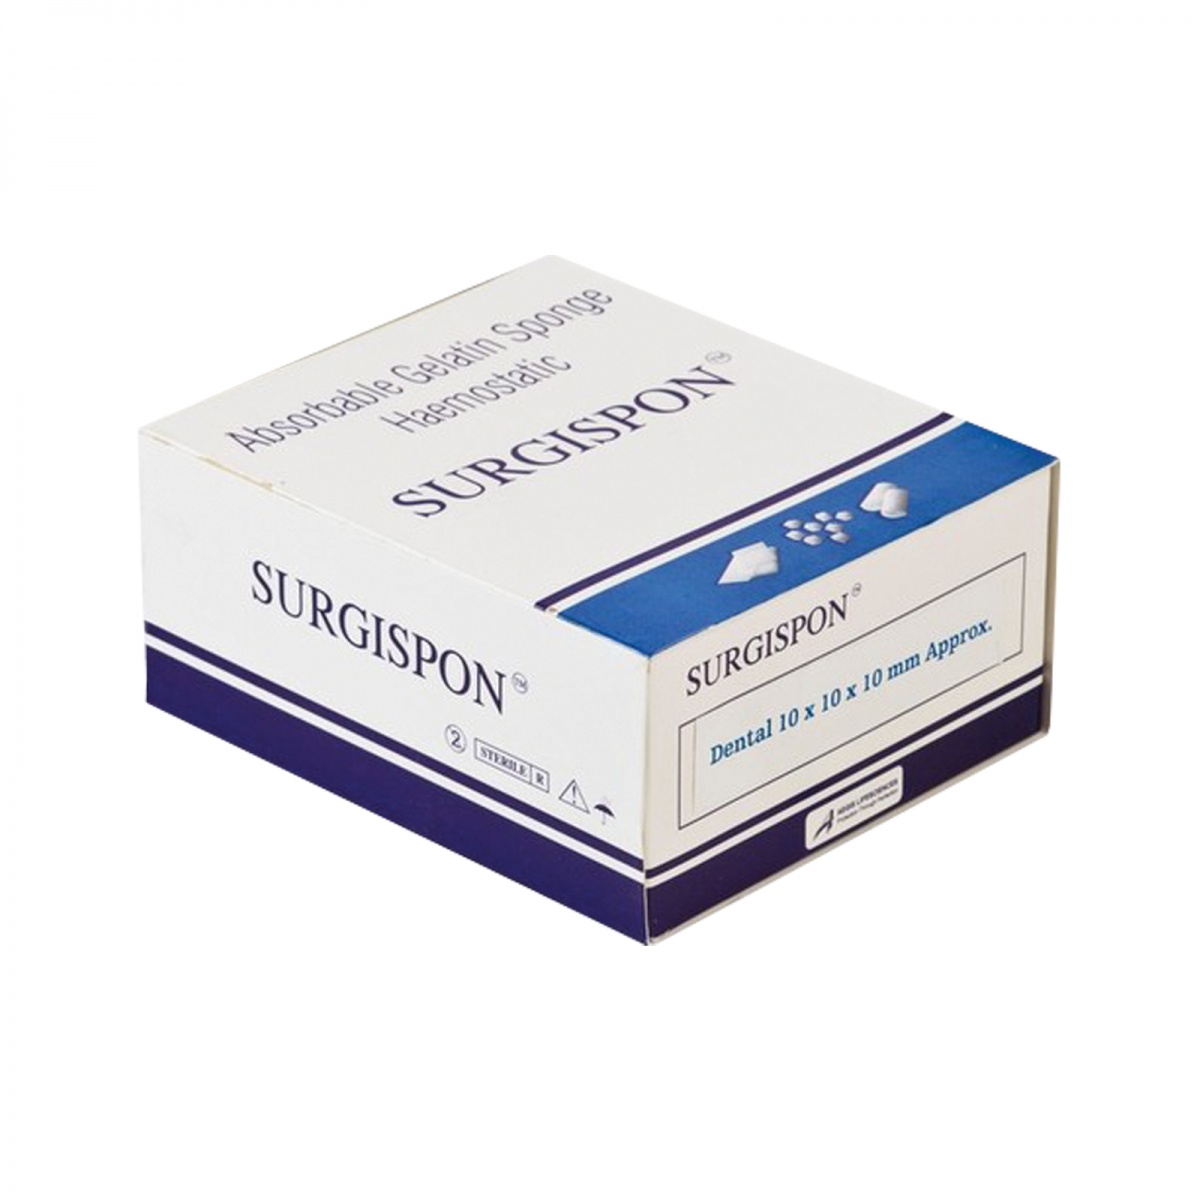 SURGISPON - hemostatické želatinové houbičky ( PRODUKT URČEN POUZE PRO LÉKAŘE)